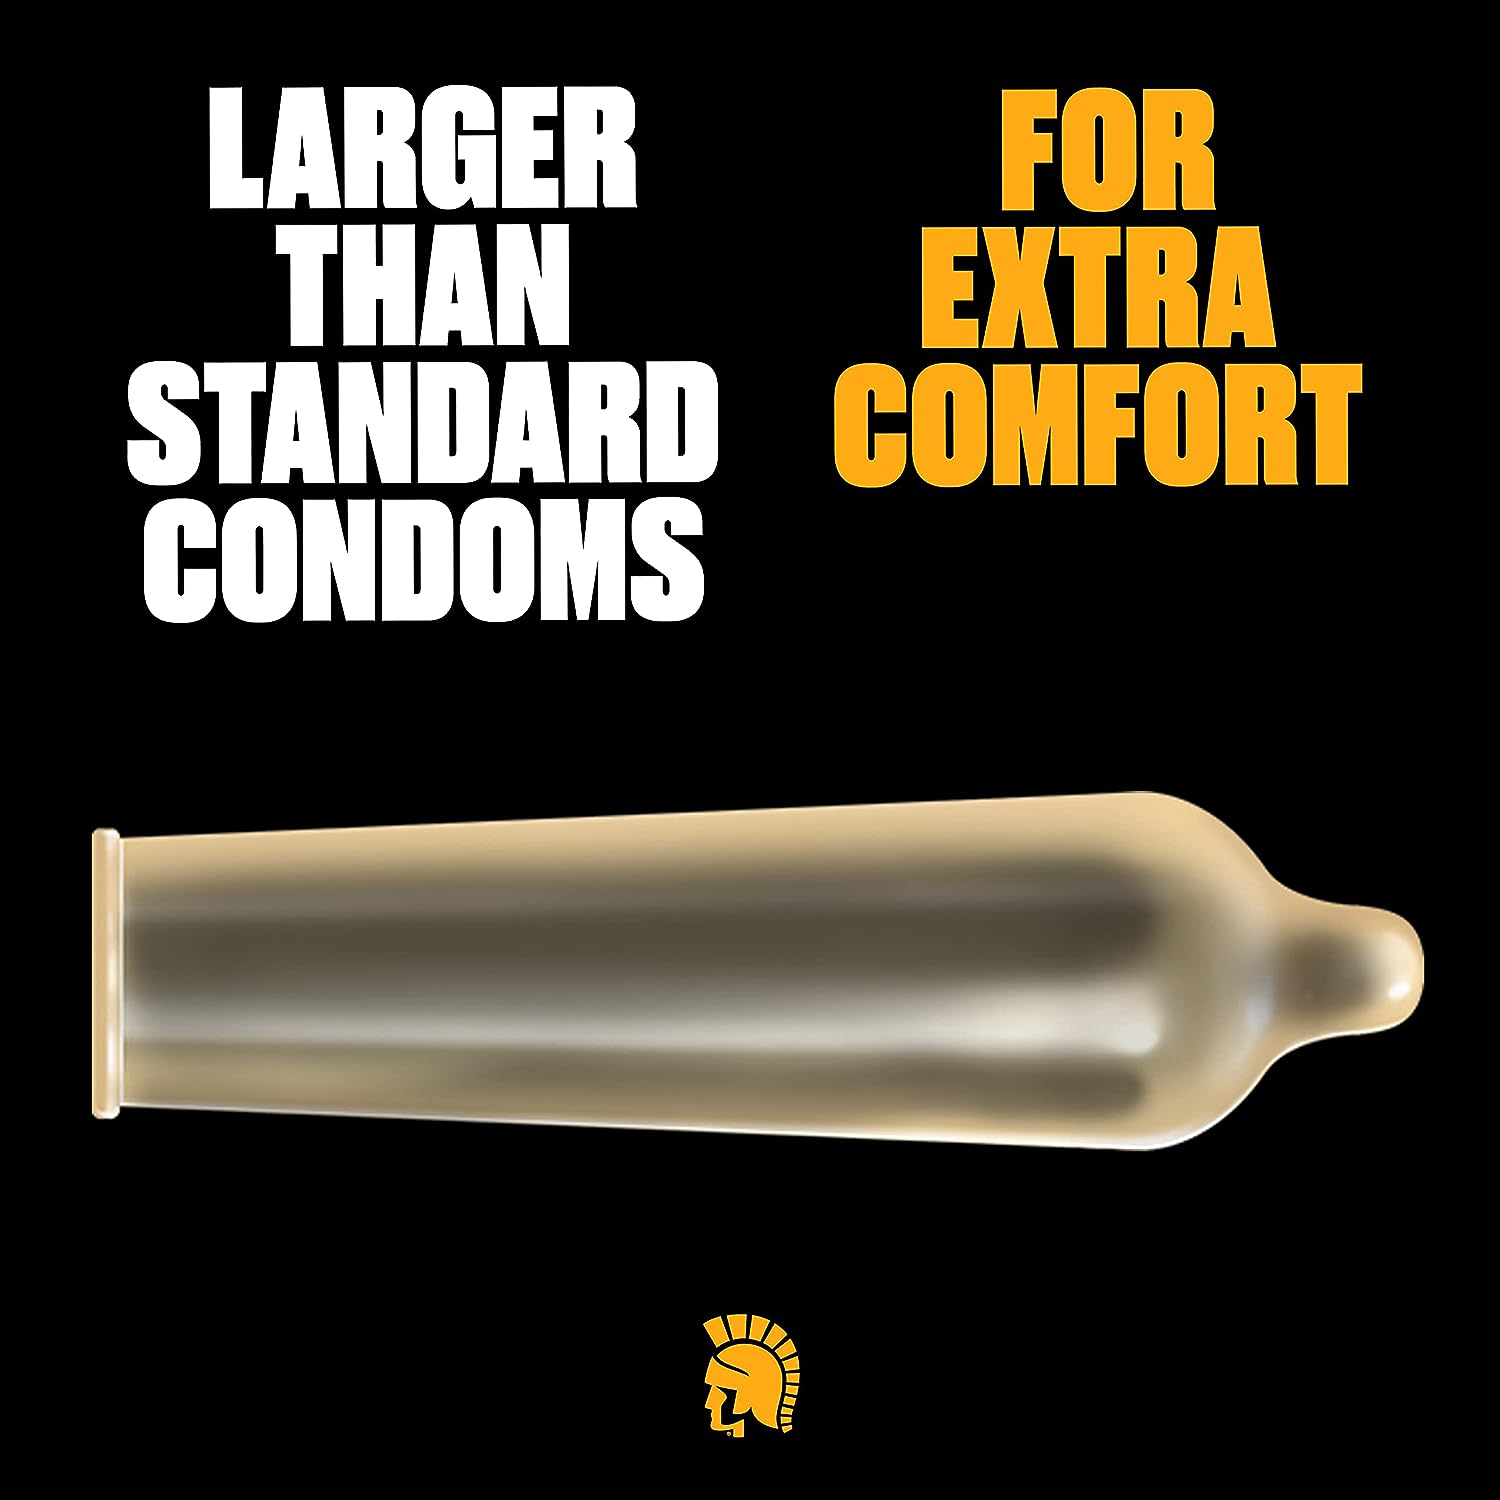 TROJAN Magnum Lubricated Large Condoms 36 Count Pack - Sex Shop Miami